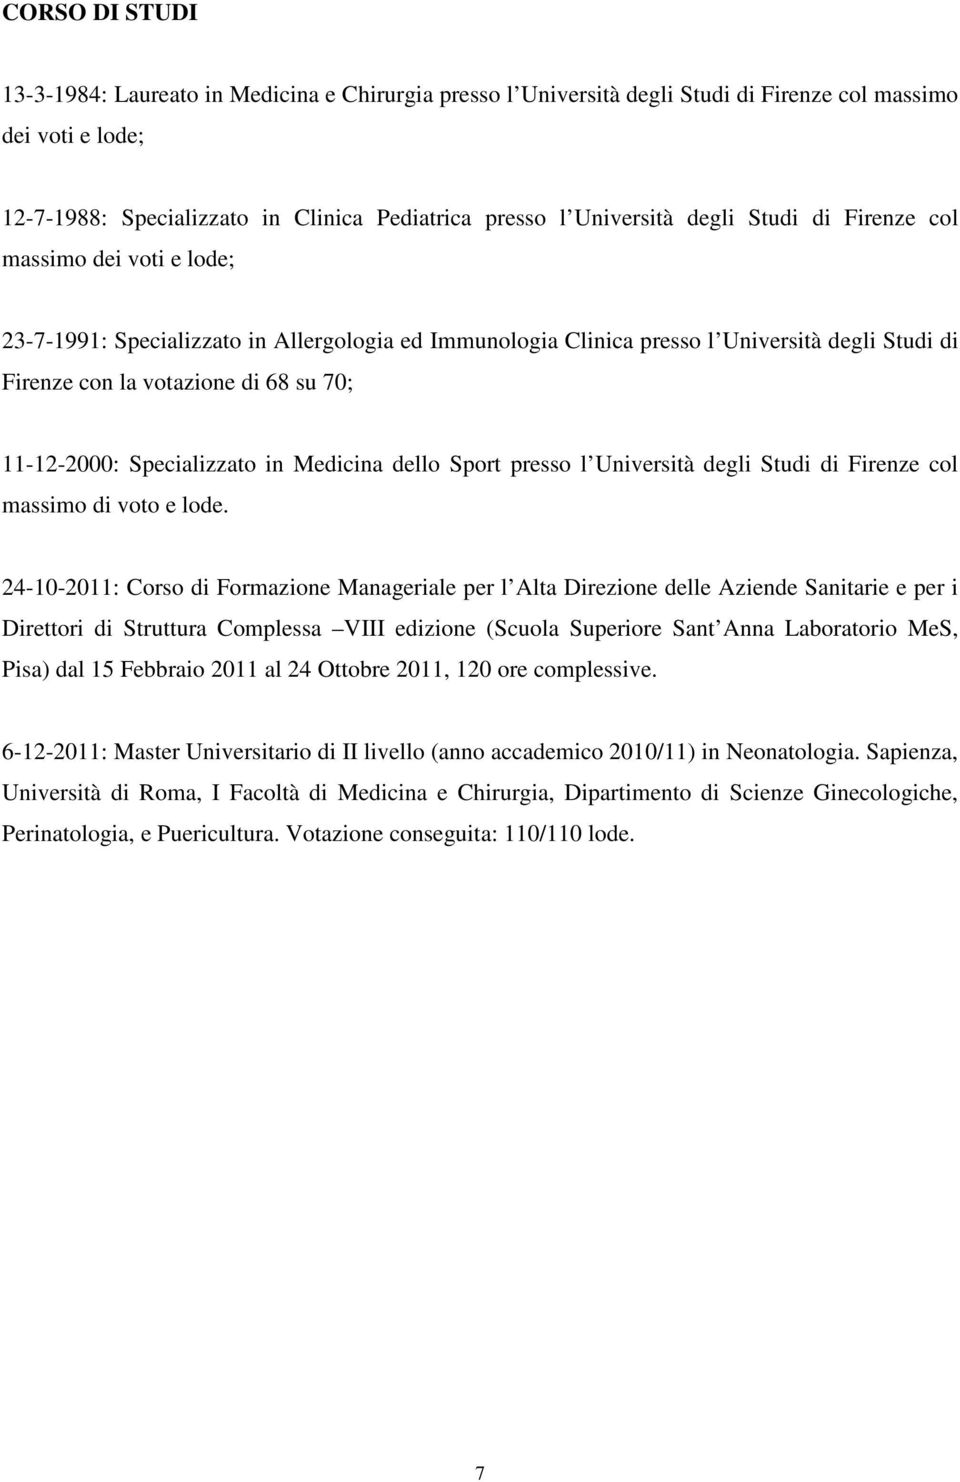 11-12-2000: Specializzato in Medicina dello Sport presso l Università degli Studi di Firenze col massimo di voto e lode.